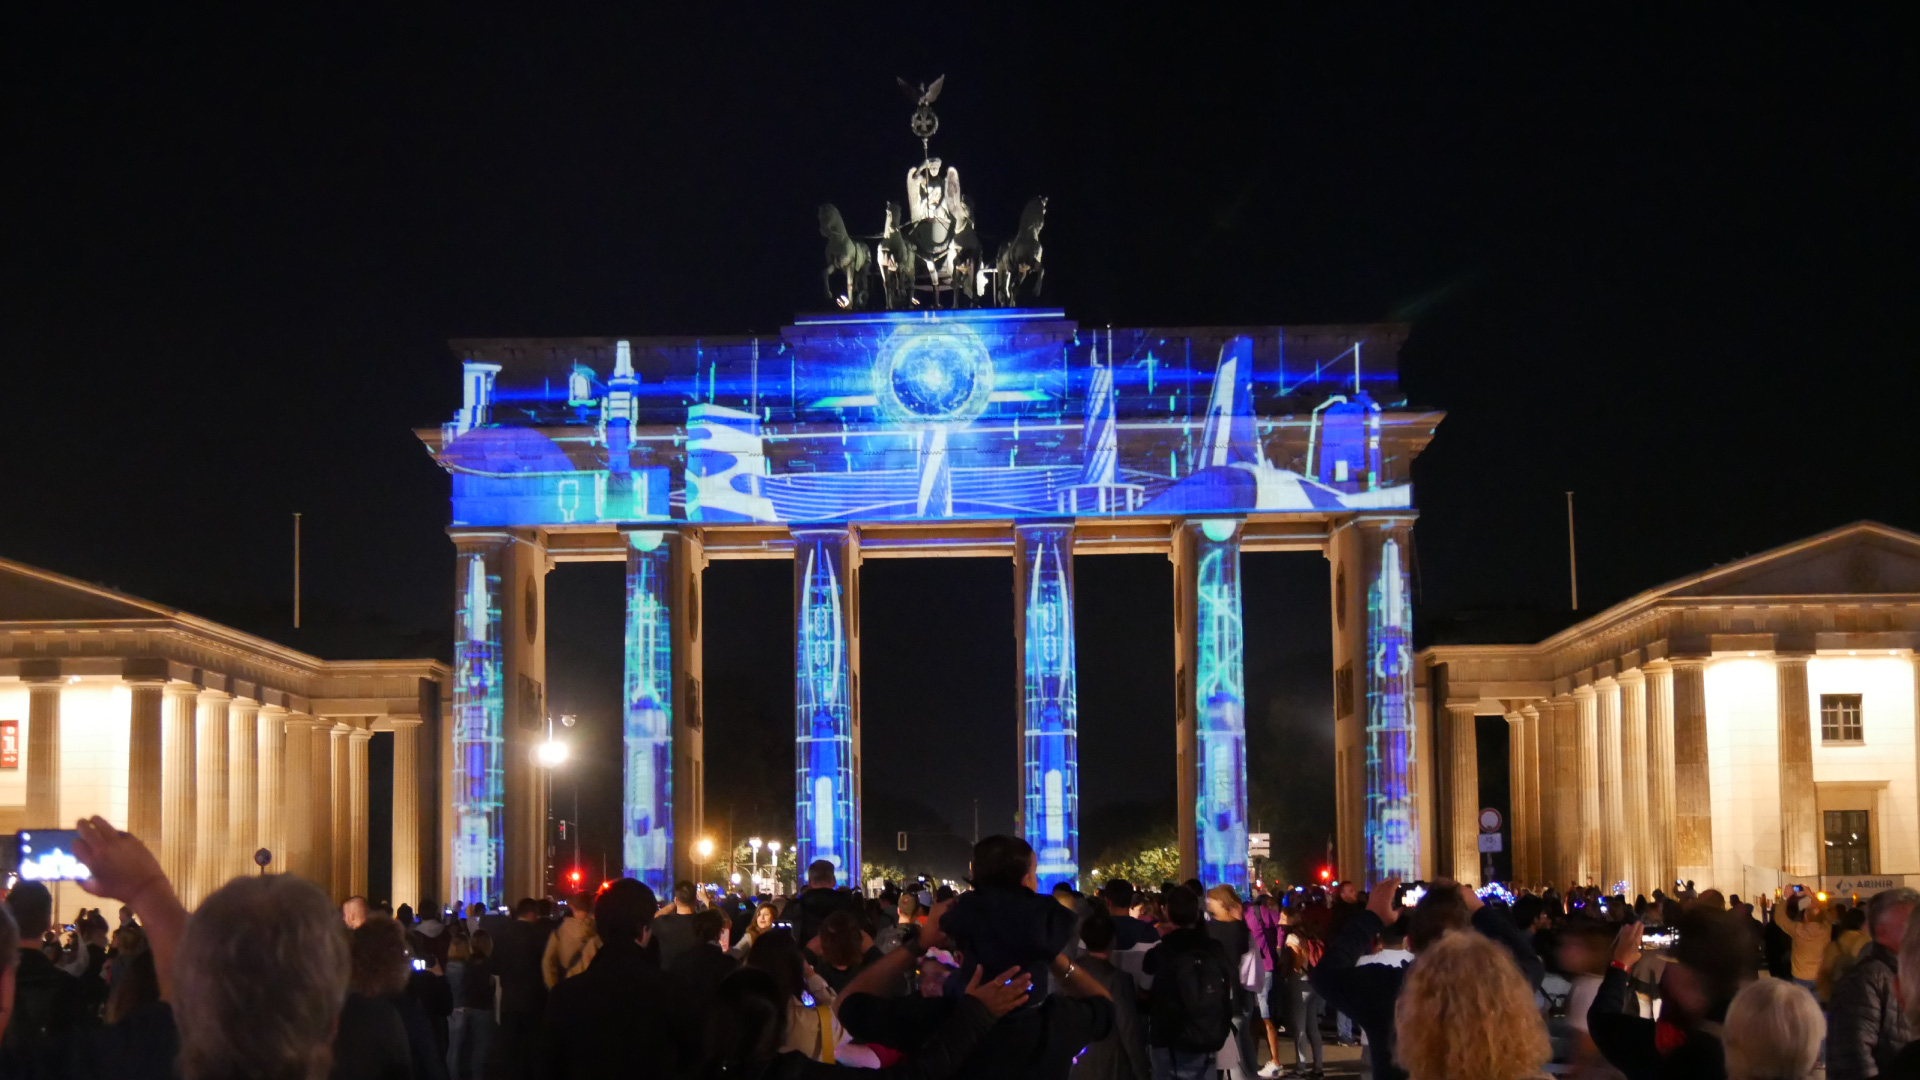 PRG a fourni plus de 20 projecteurs pour la réalisation de ces illuminations lors du Festival of Lights de Berlin, dans des lieux très divers.